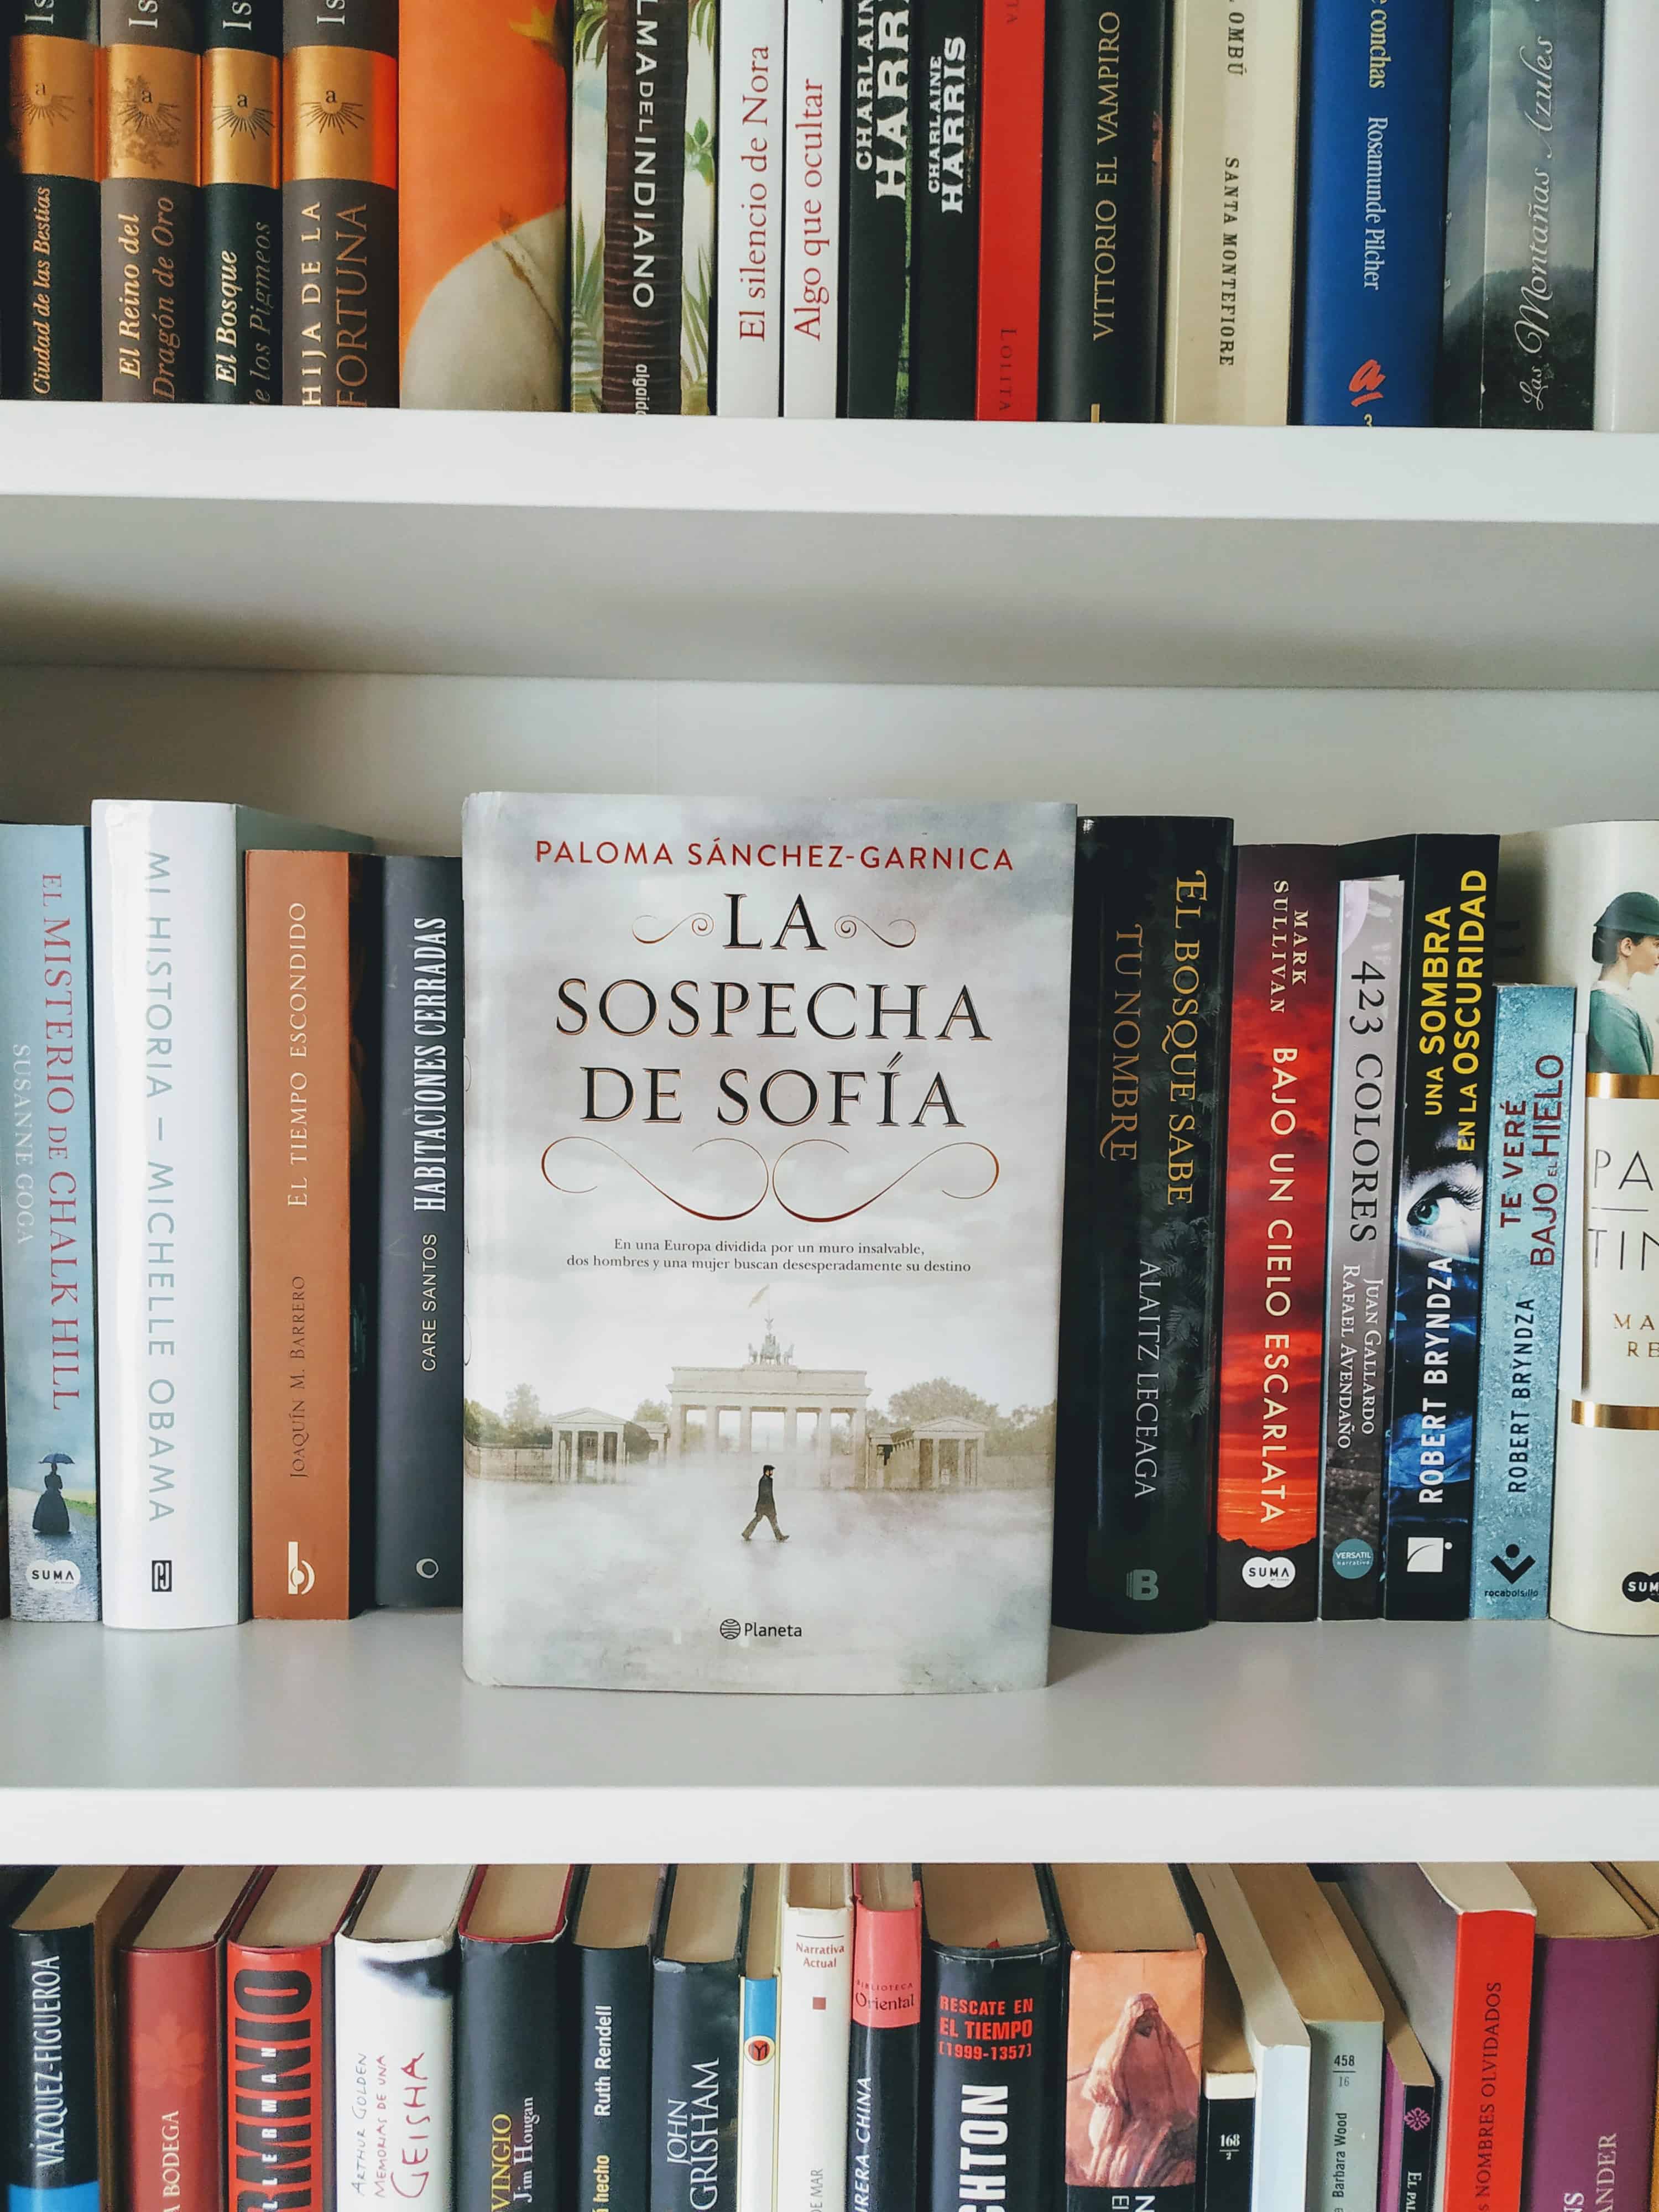 LA SOSPECHA DE SOFÍA, de Paloma Sánchez-Garnica